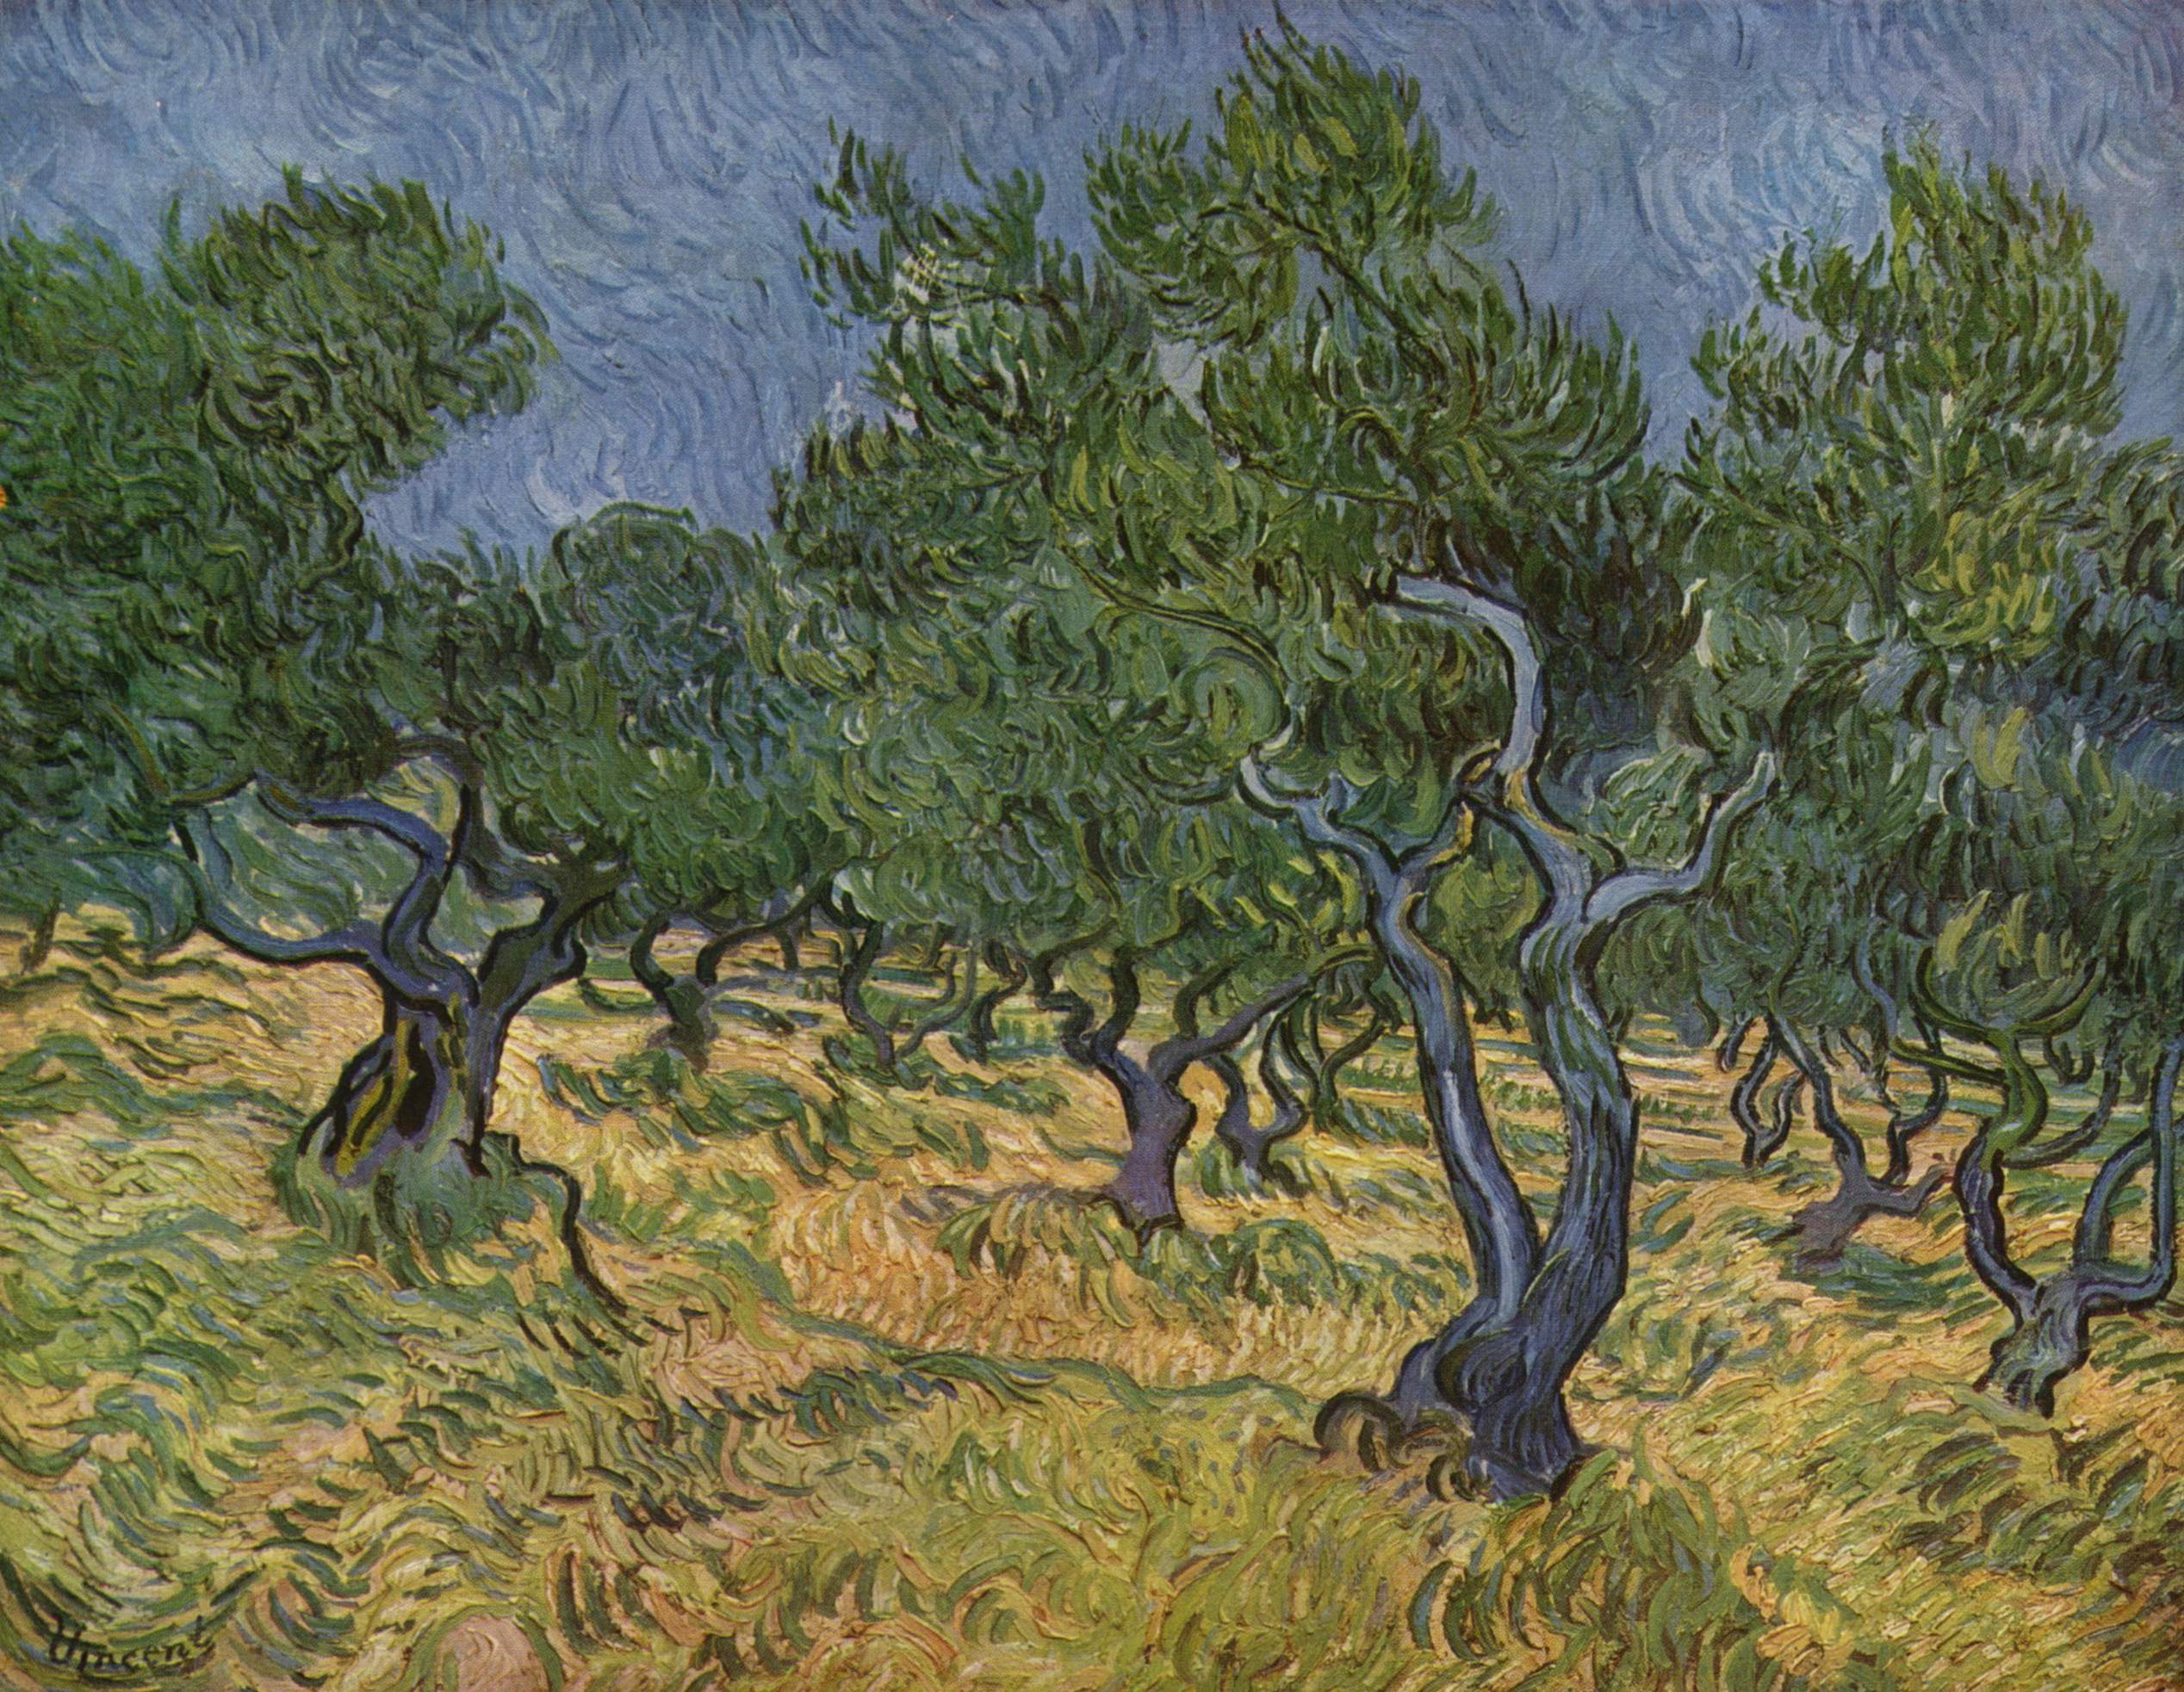 Vincent Van Gogh, Olive Trees, 1889, oil on canvas, 72.4 x 91.9 cm (Kröller Müller, Otterlo)